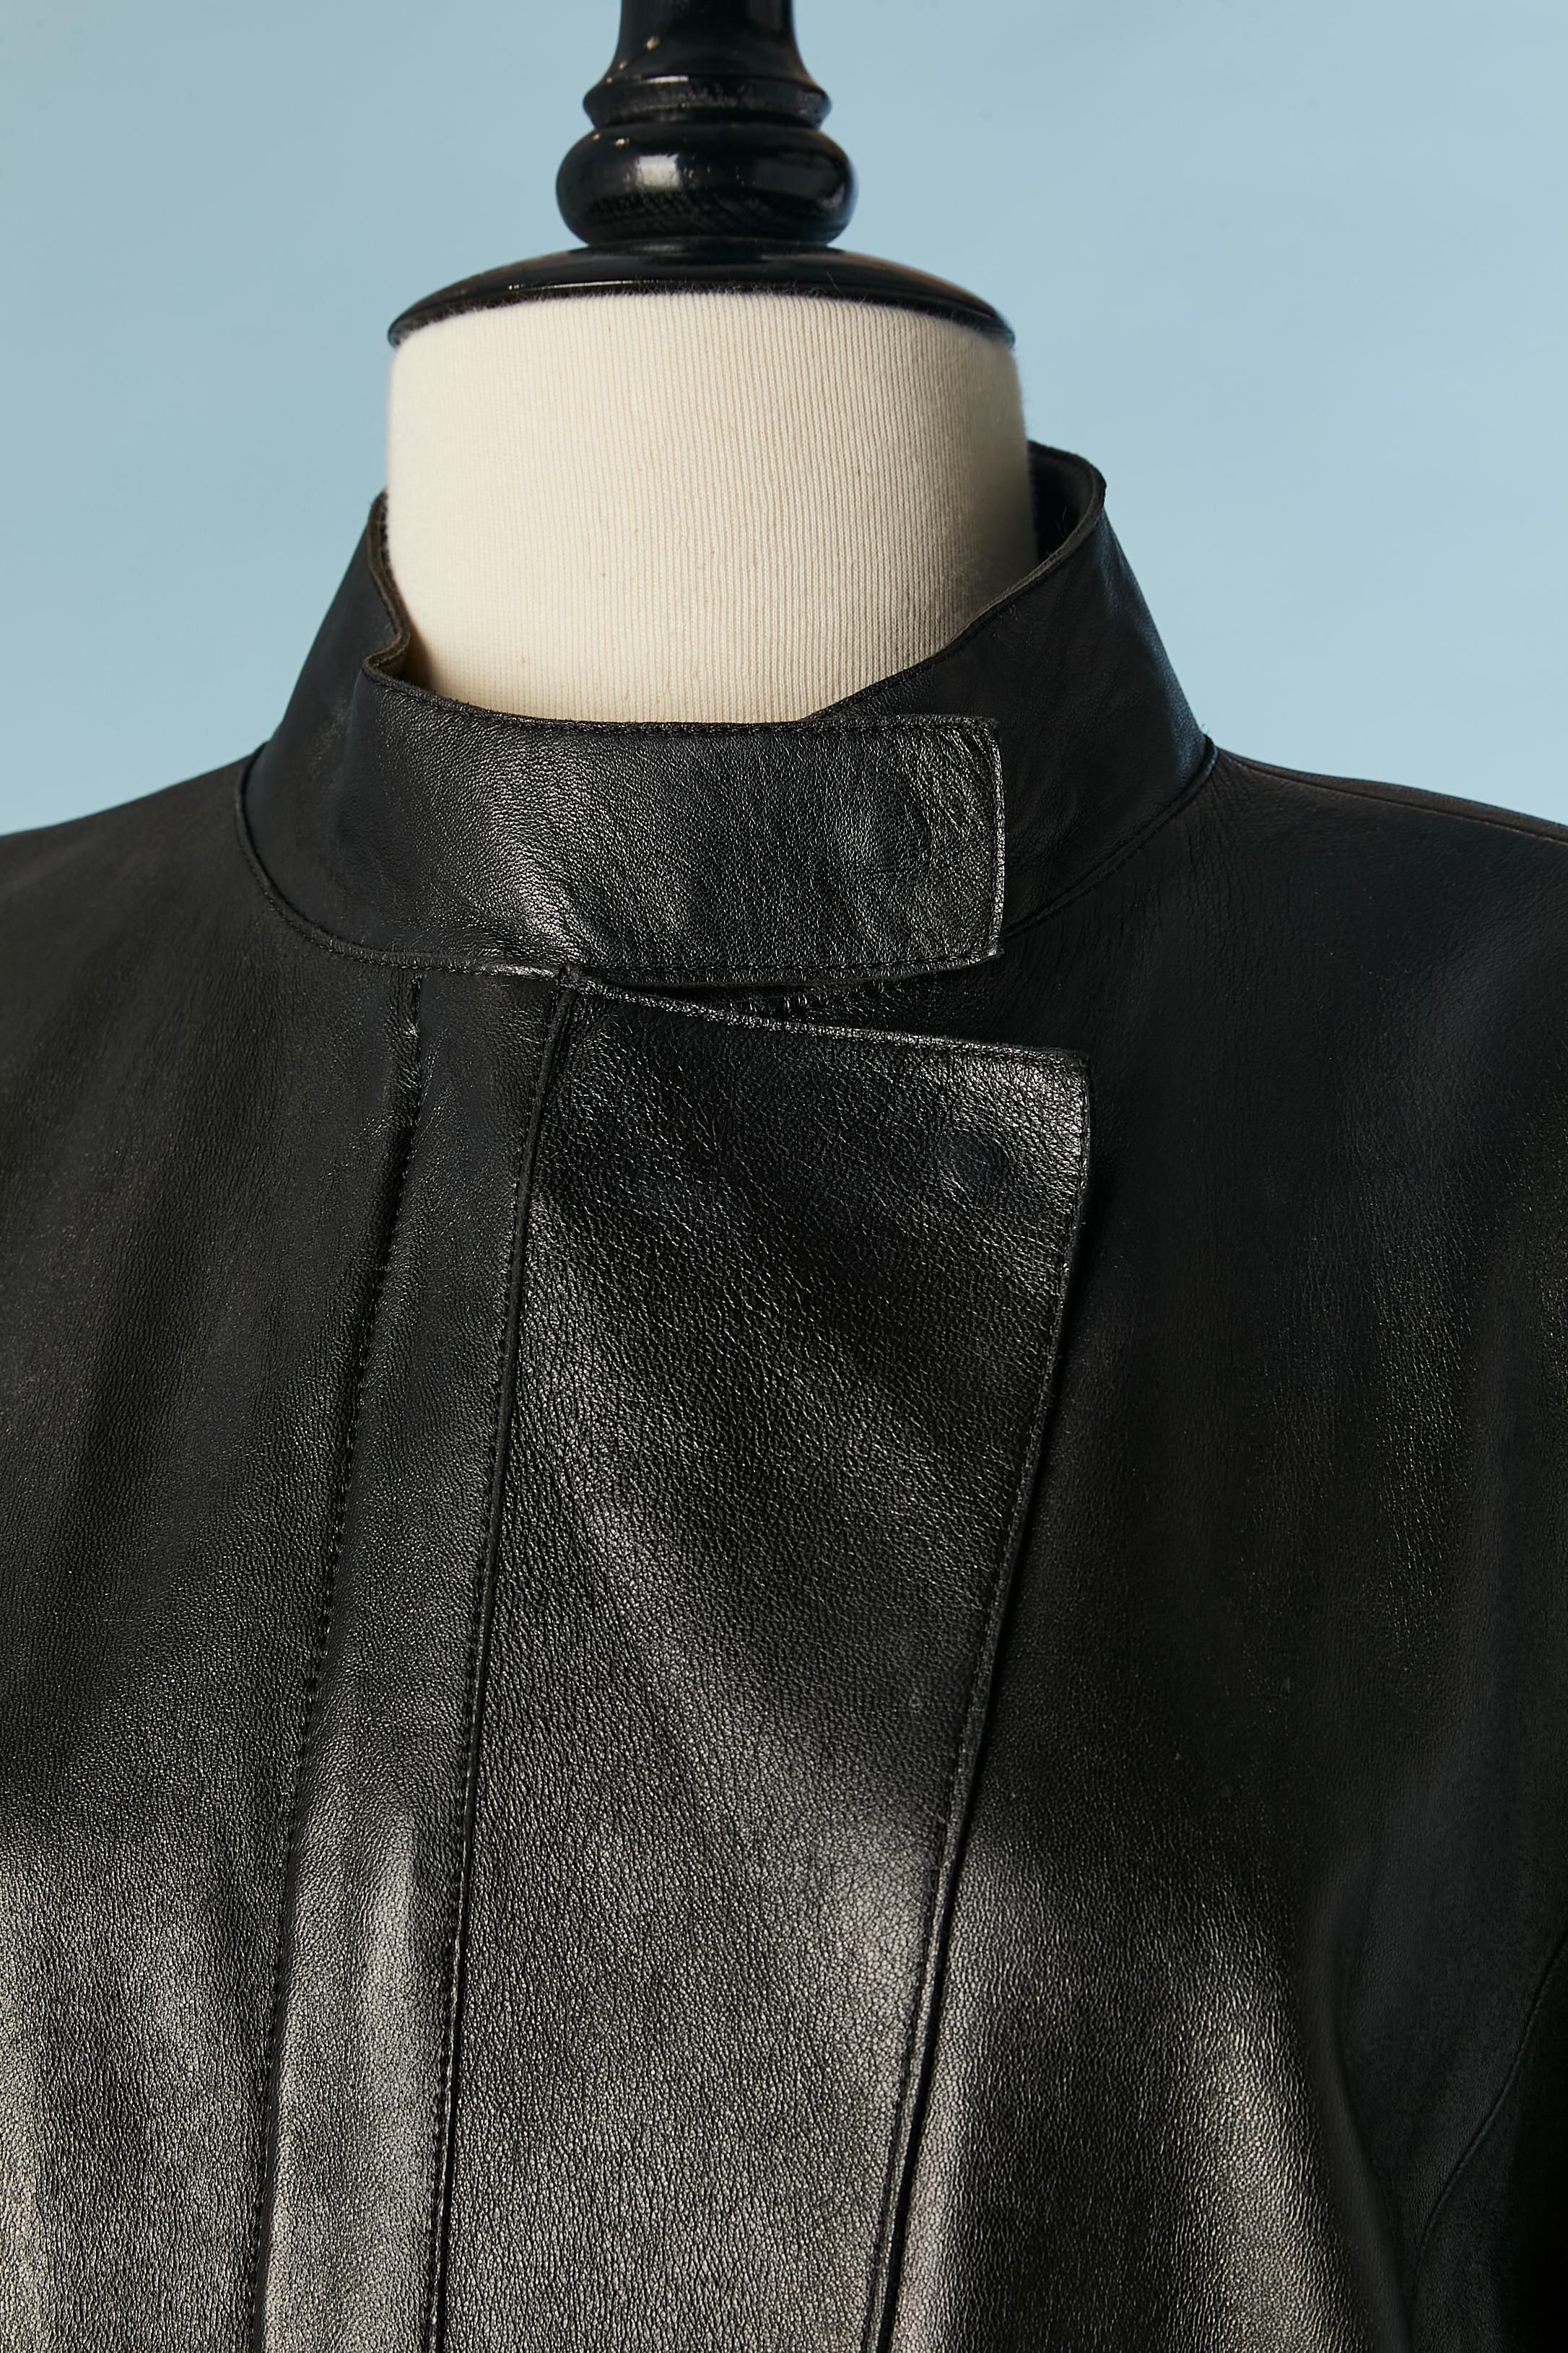 Schwarzer Ledermantel mit beigen Ledereinsätzen (seitlich und in den Taschen) und Reißverschluss mit doppeltem Marken-Reißverschluss. Druckknopfverschluss an der Oberseite des Reißverschlusses. Schulterpads. Taschen auf beiden Seiten. Hinten in der